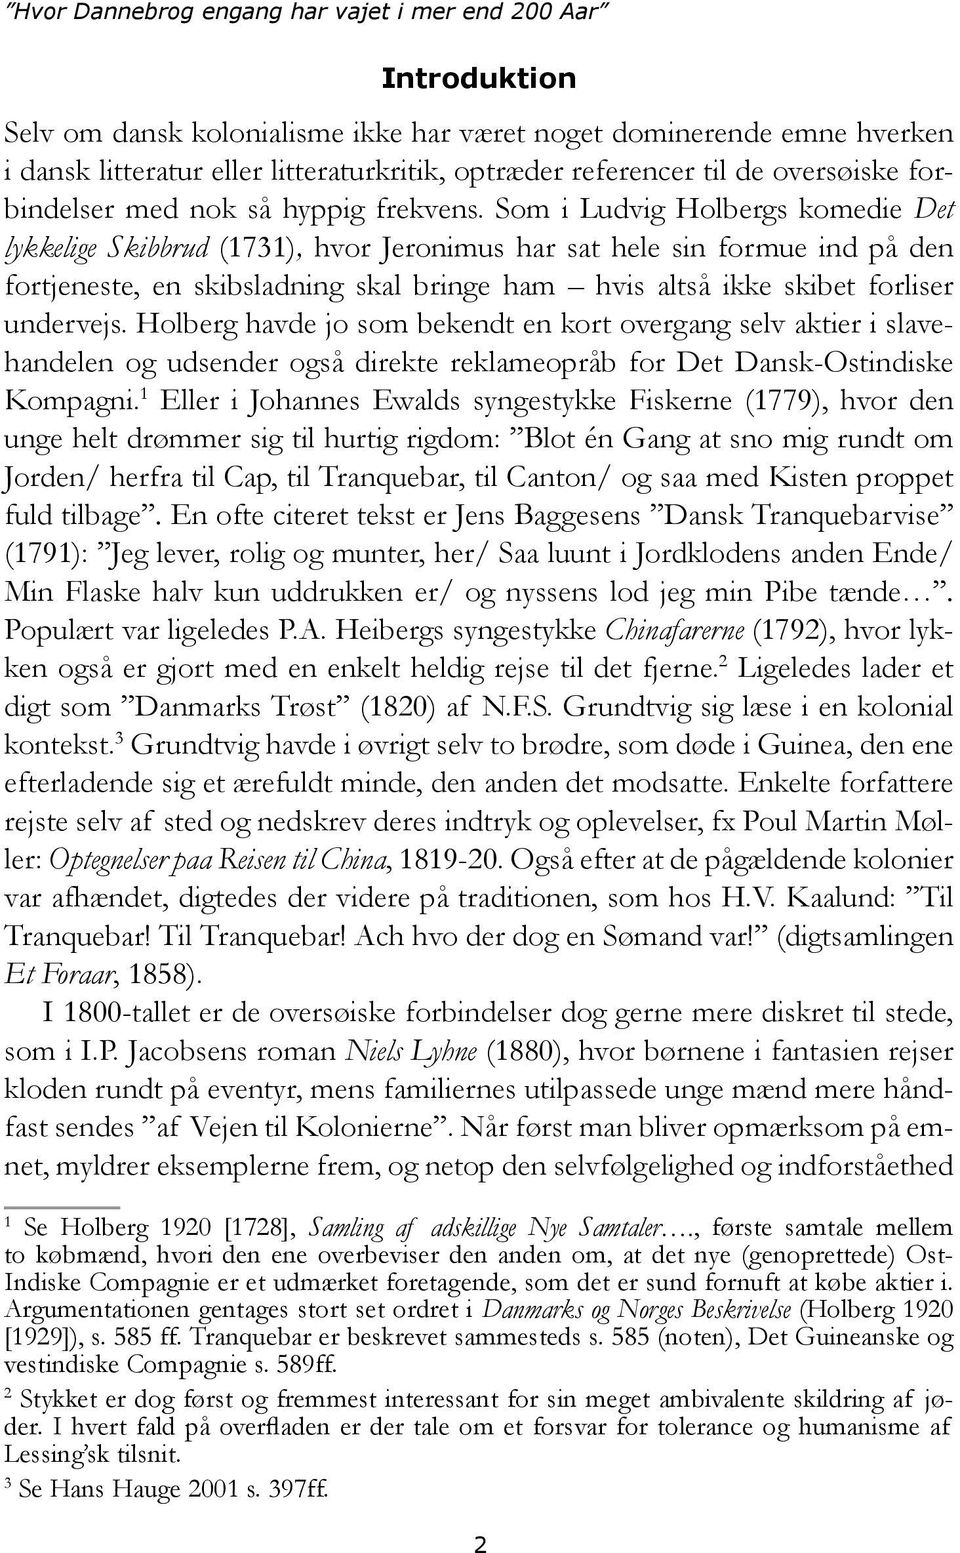 Som i Ludvig Holbergs komedie Det lykkelige Skibbrud (1731), hvor Jeronimus har sat hele sin formue ind på den fortjeneste, en skibsladning skal bringe ham hvis altså ikke skibet forliser undervejs.